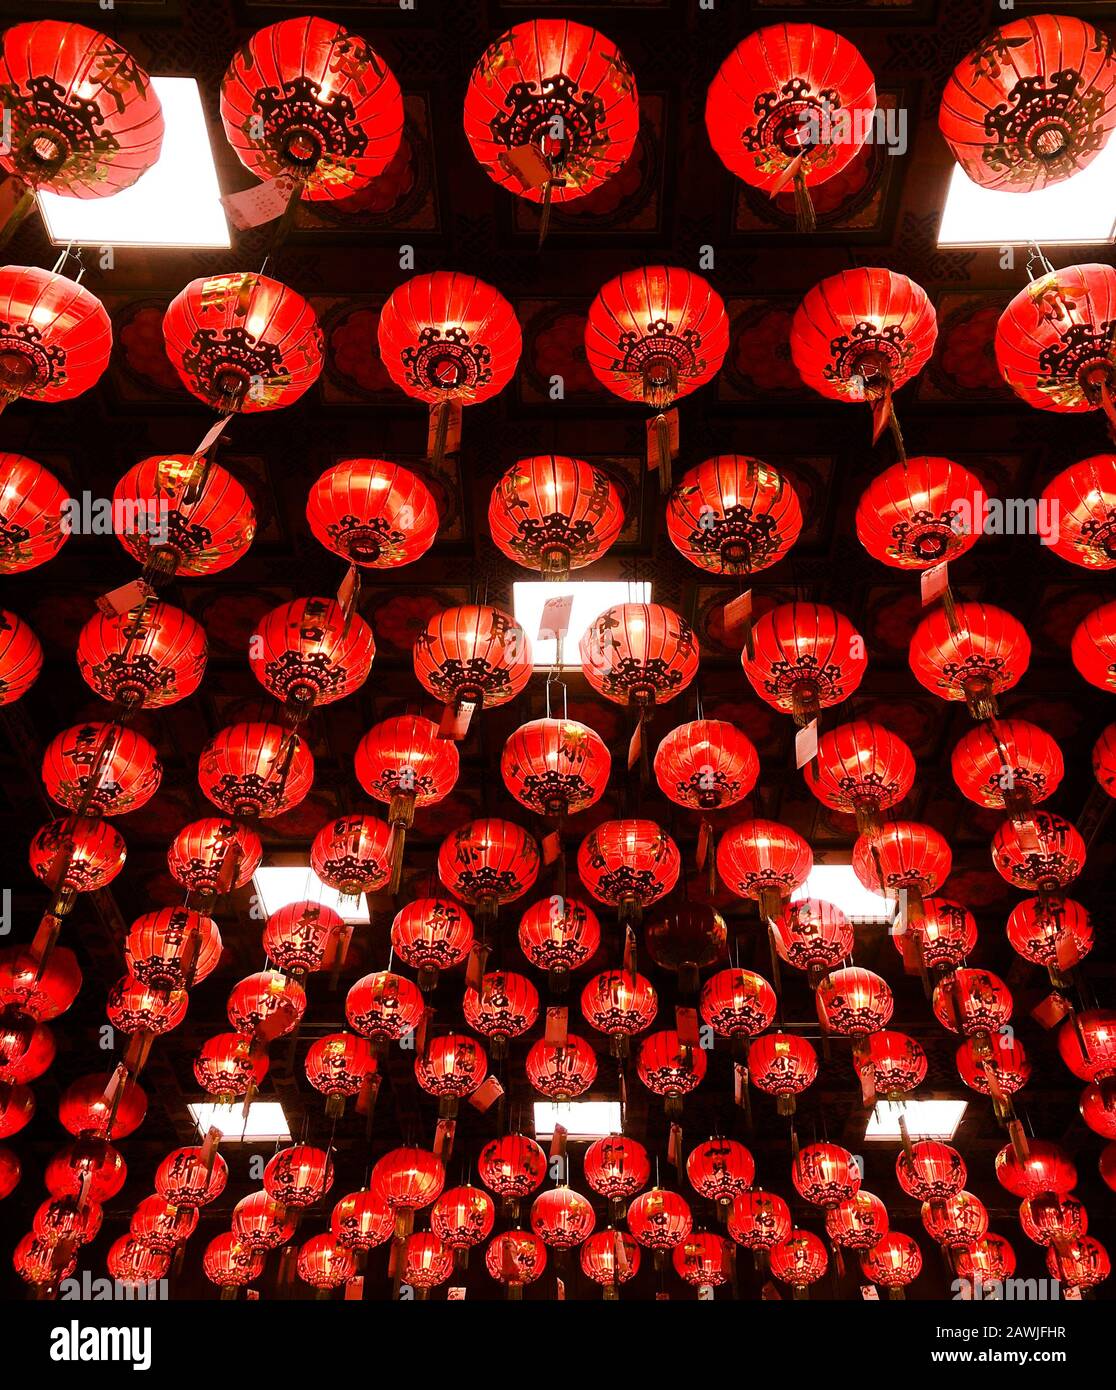 26 de enero de 2020 Bangkok, Tailandia - Muchas lámparas rojas chinas  colgando del techo - estilo asiático clásico decoración de lámpara roja  Fotografía de stock - Alamy